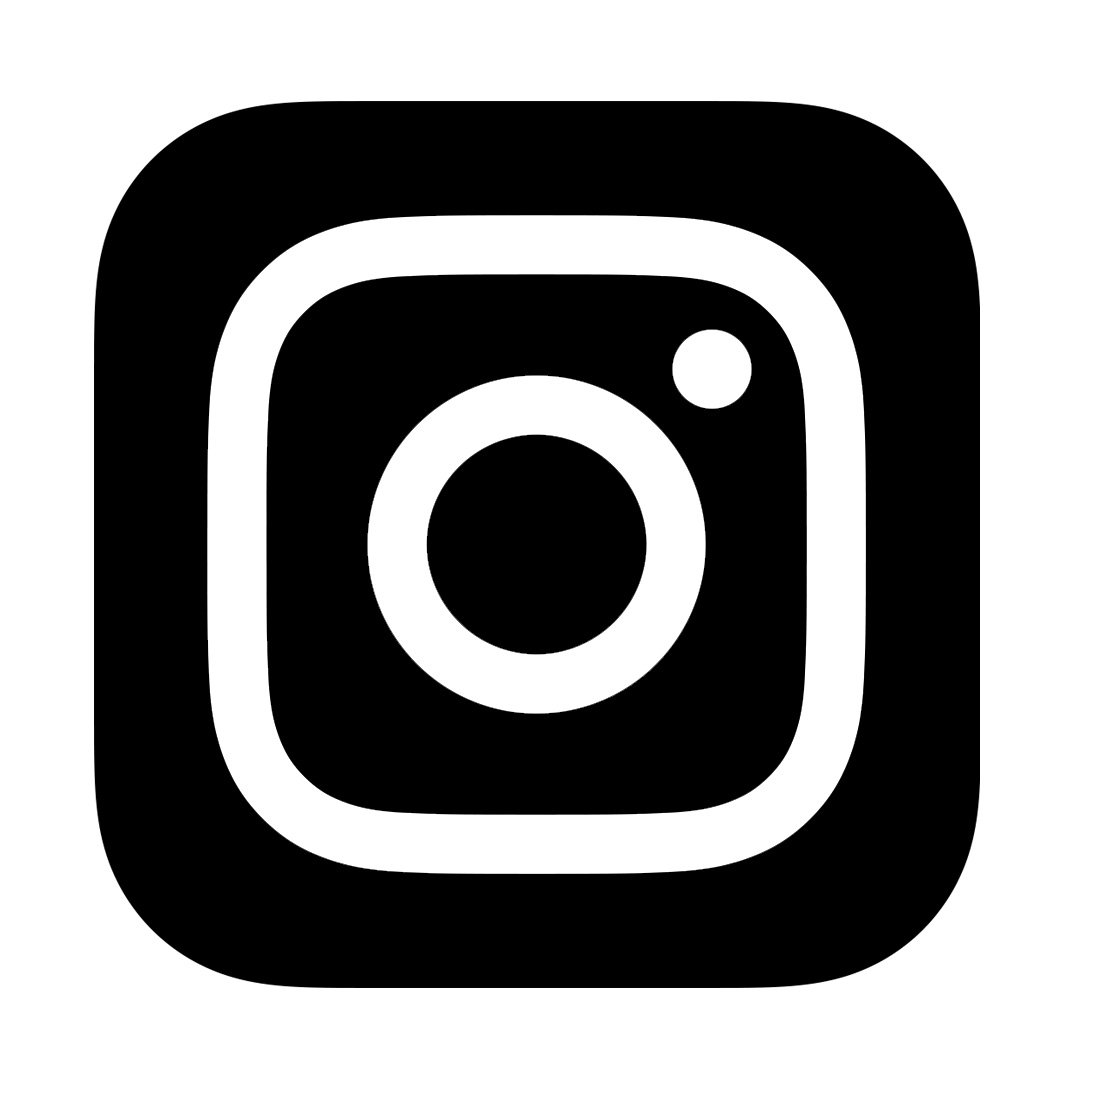 understanding instagram symbols